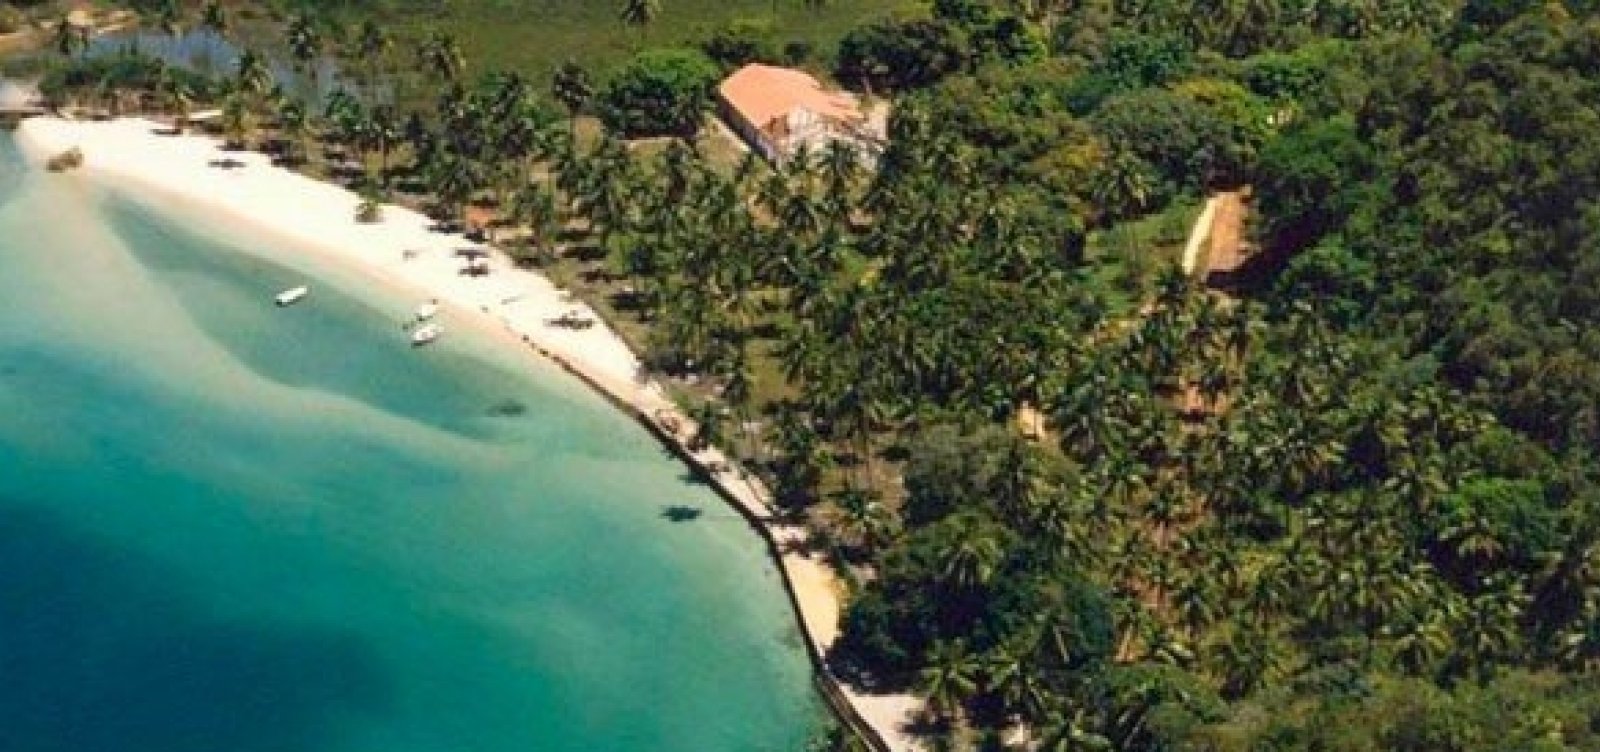 lha dos Frades ganha selo internacional por qualidade de praias